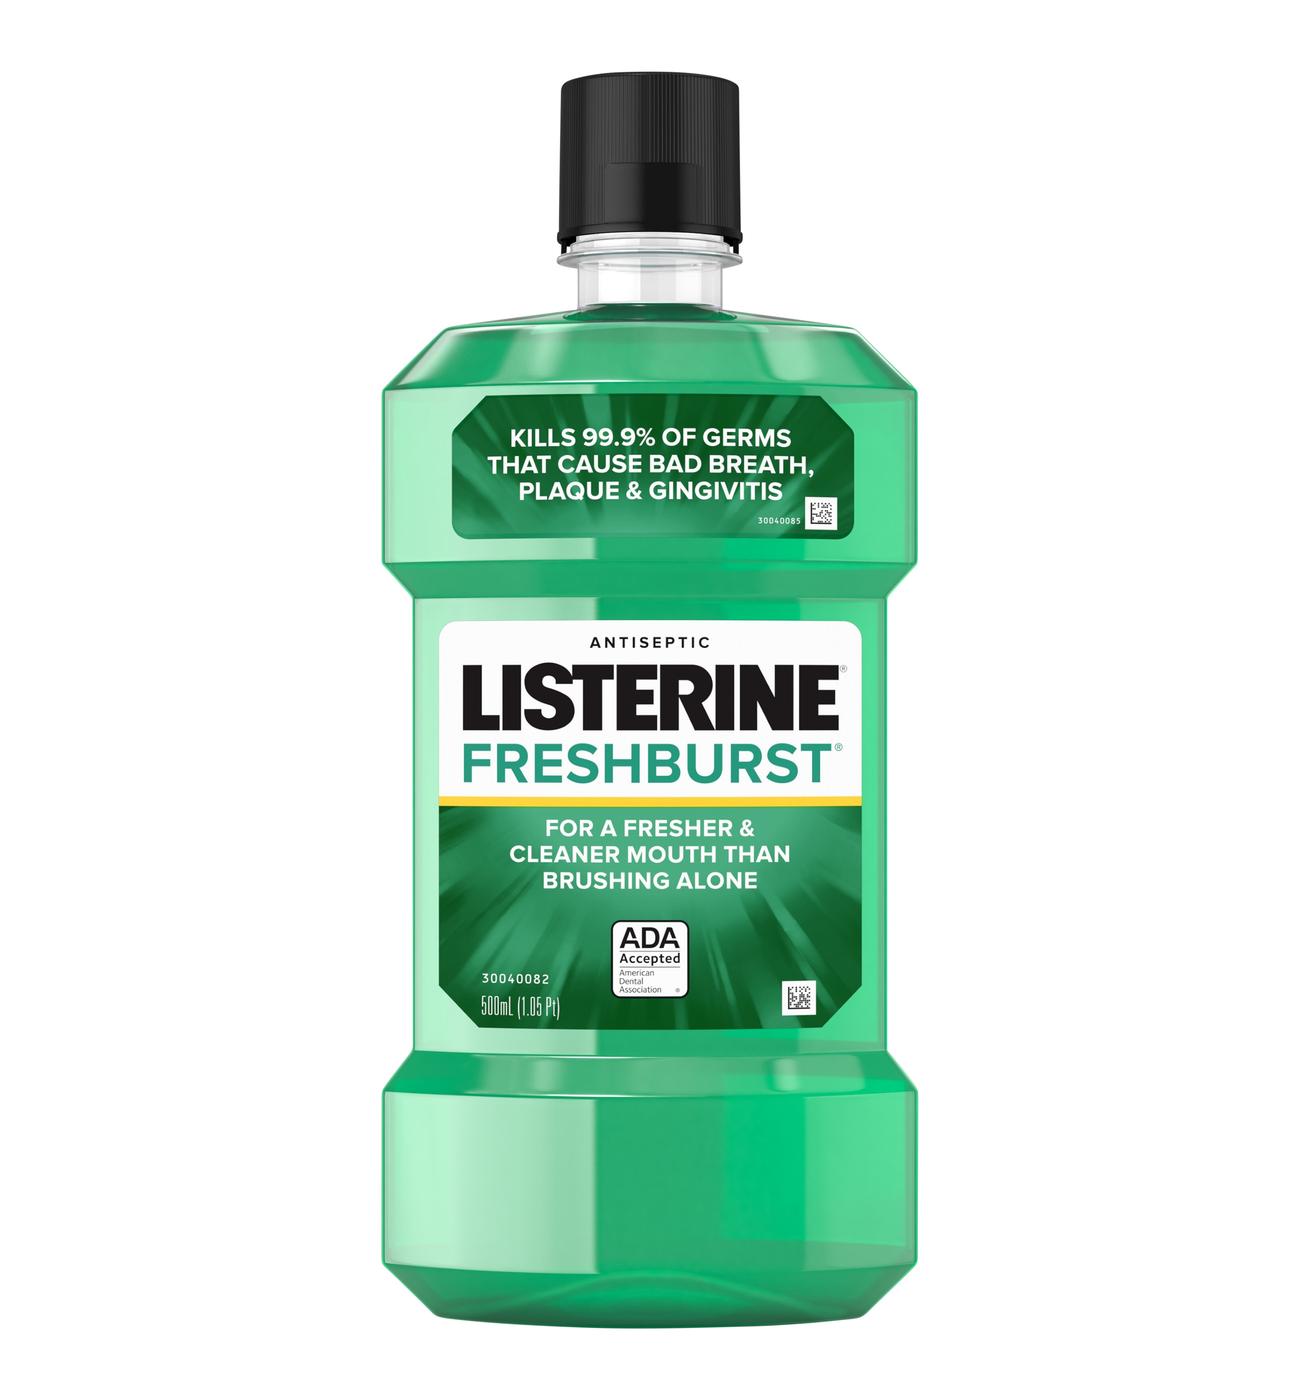 Listerine Freshburst Antiseptic Mouthwash; image 1 of 6